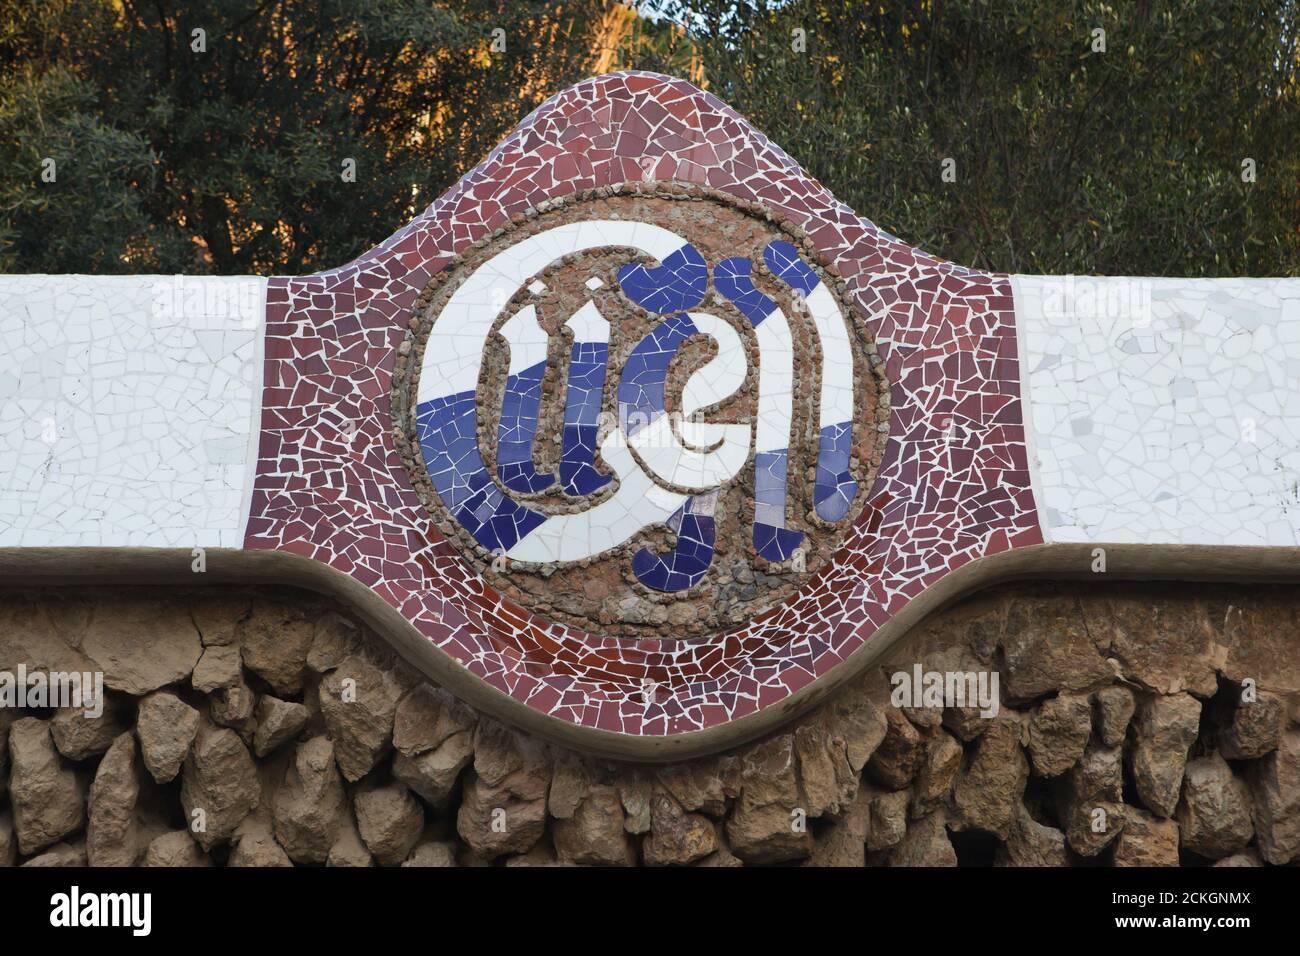 trencadís iscrizione a mosaico sulla recinzione del Parco Güell progettata dall'architetto modernista catalano Antoni Gaudí e costruita tra il 1900 e il 1914 a Barcellona, Catalogna, Spagna. Foto Stock